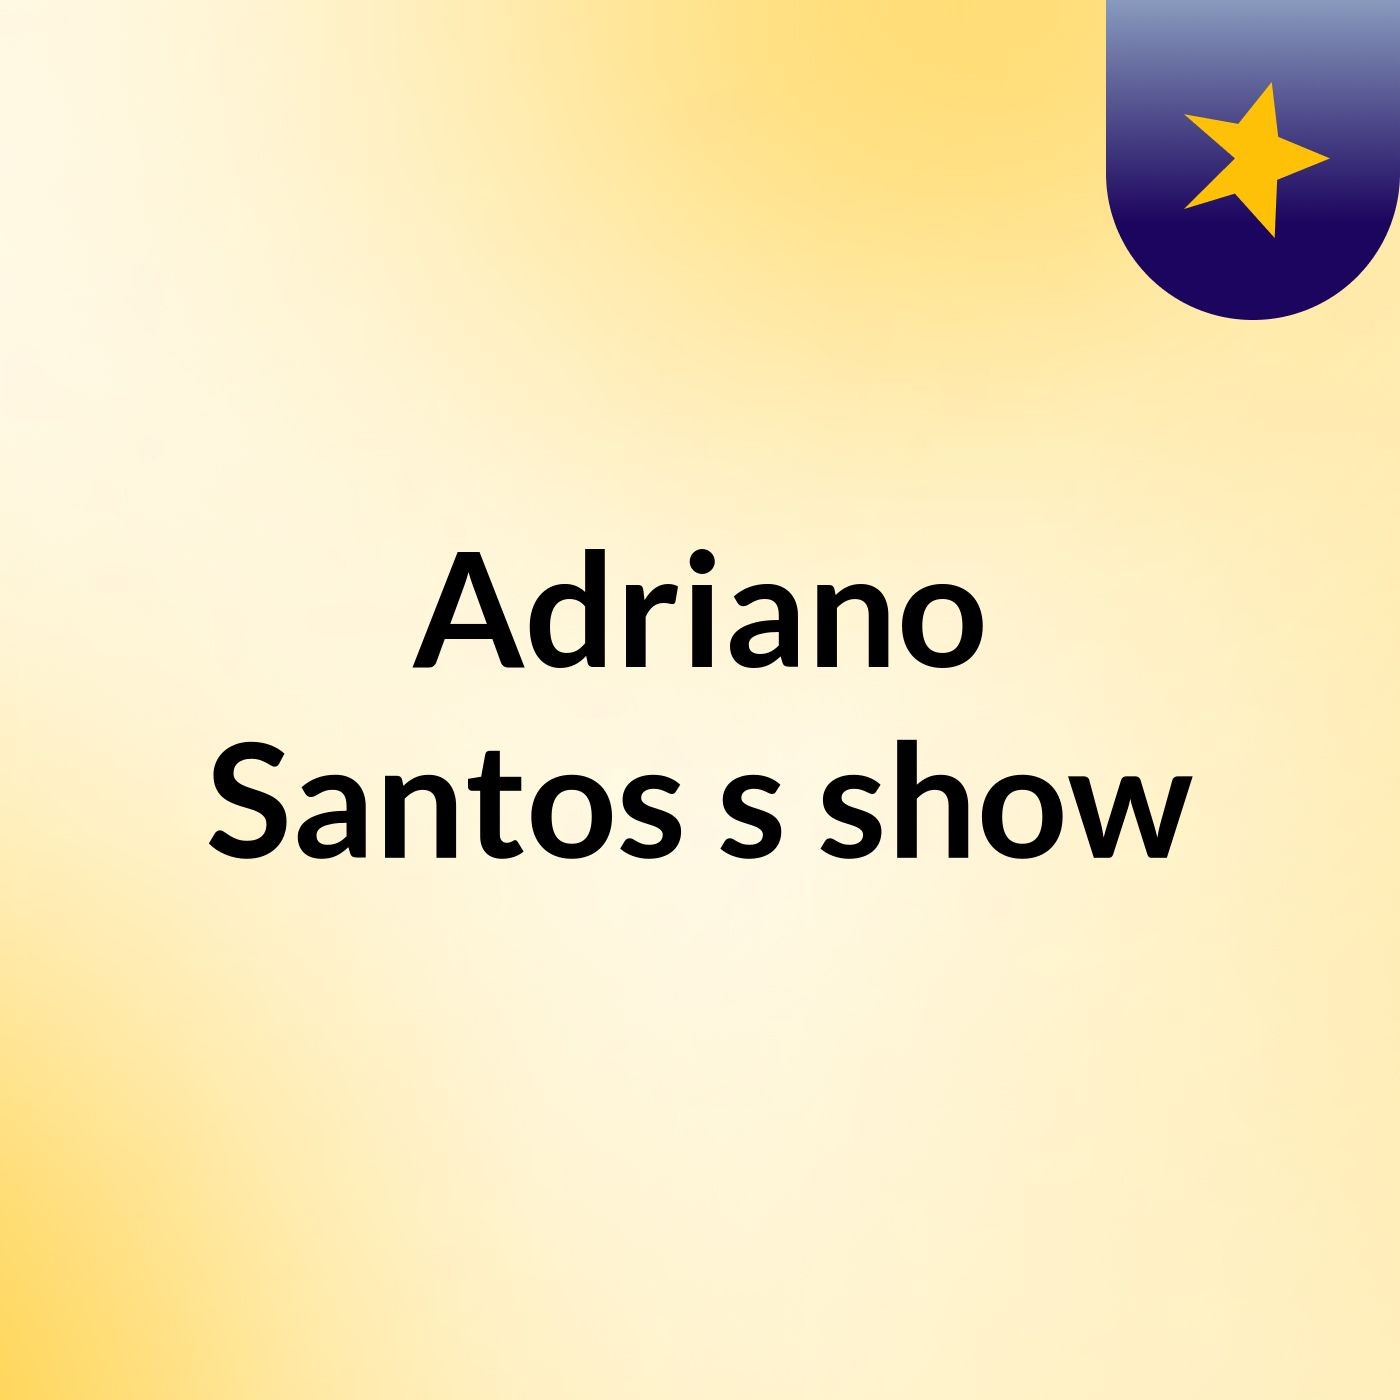 Adriano Santos's show